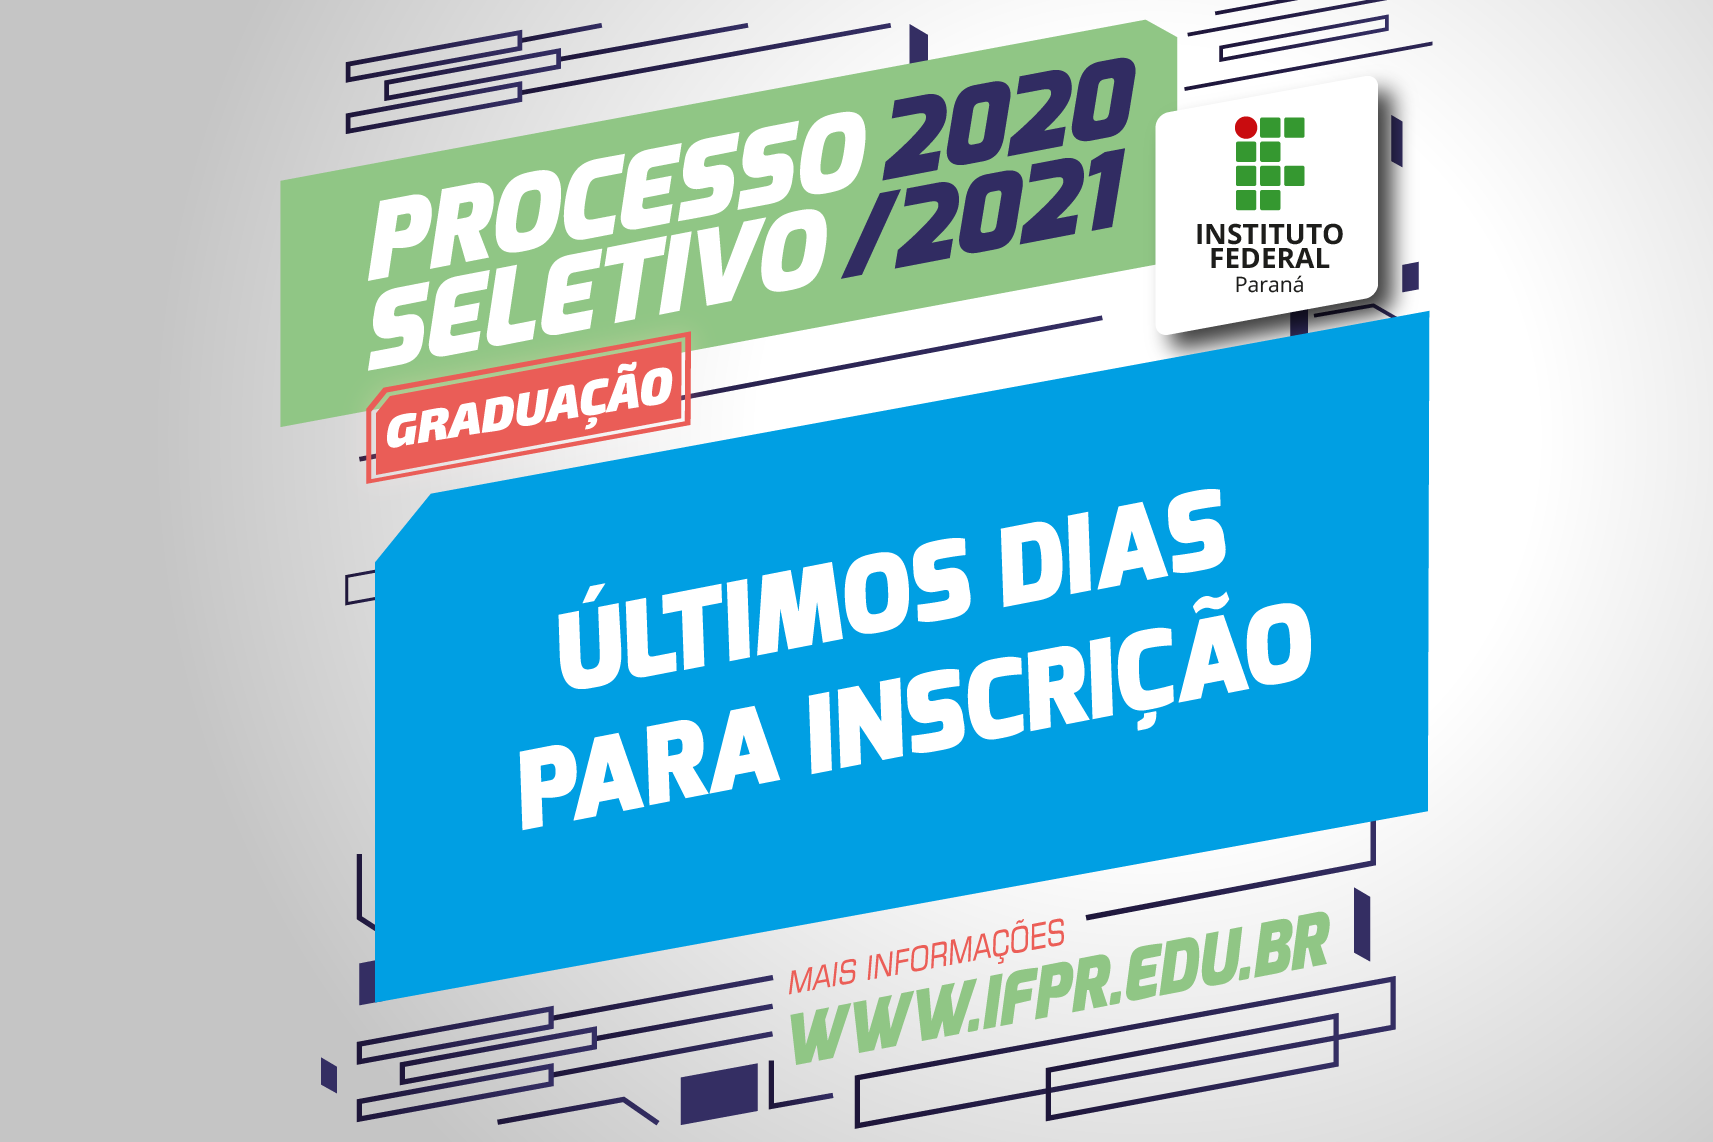 "Processo Seletivo 2020/2021. Últimos dias para inscrição. www.ifpr.edu.br"